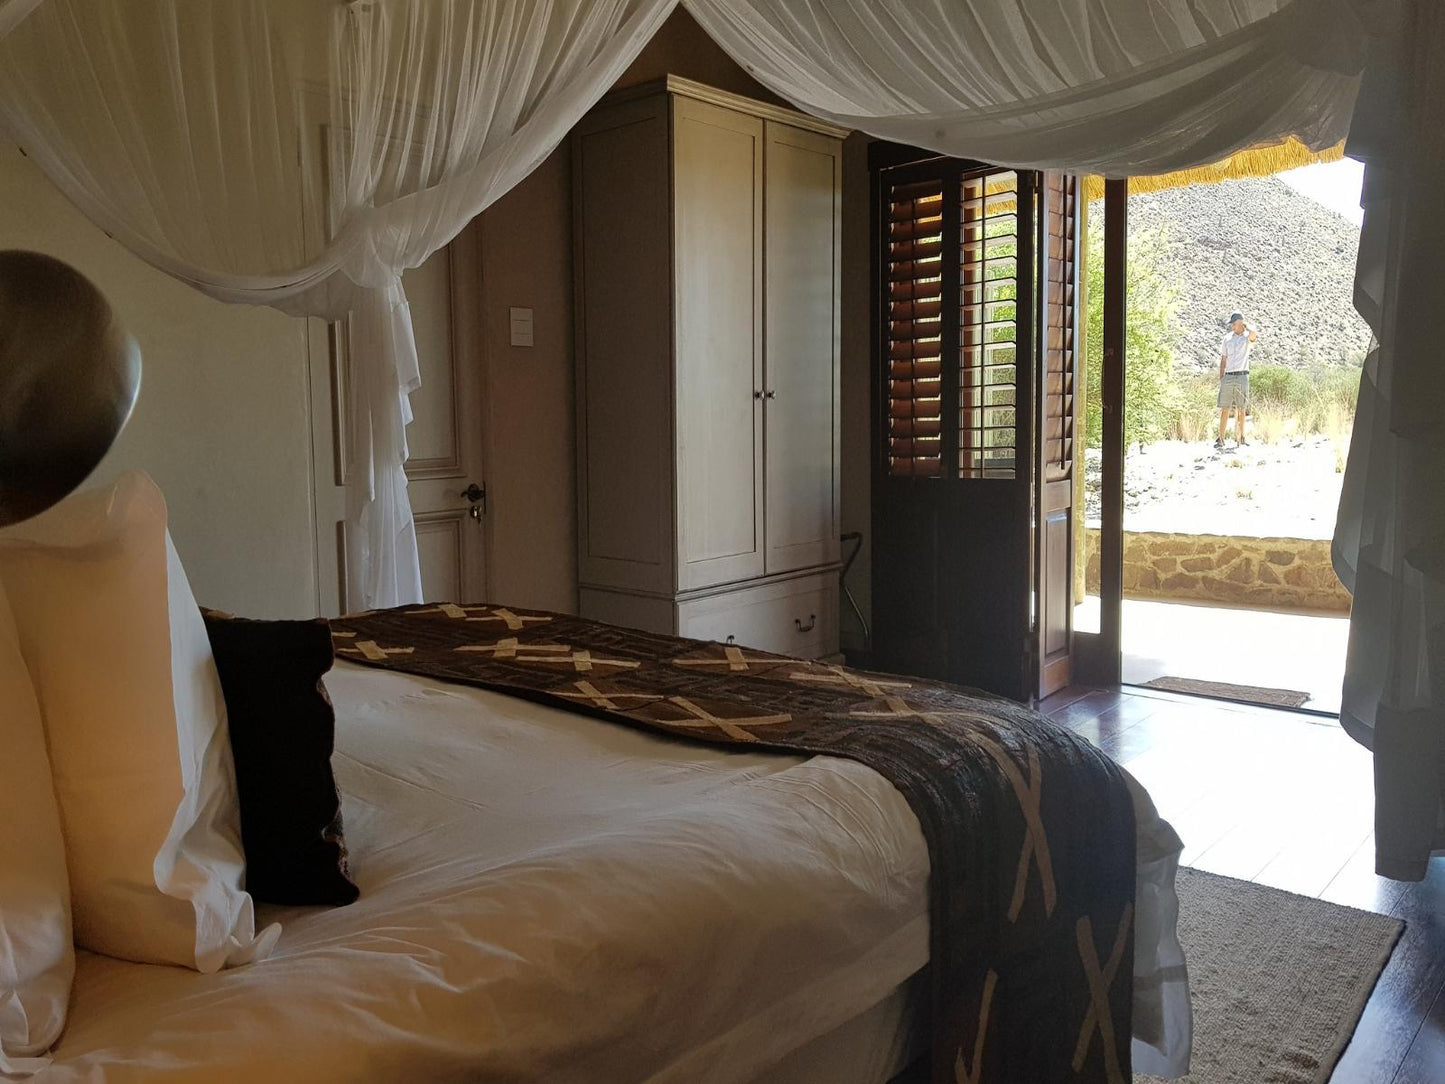 Luxury Room @ Tutwa Desert Lodge